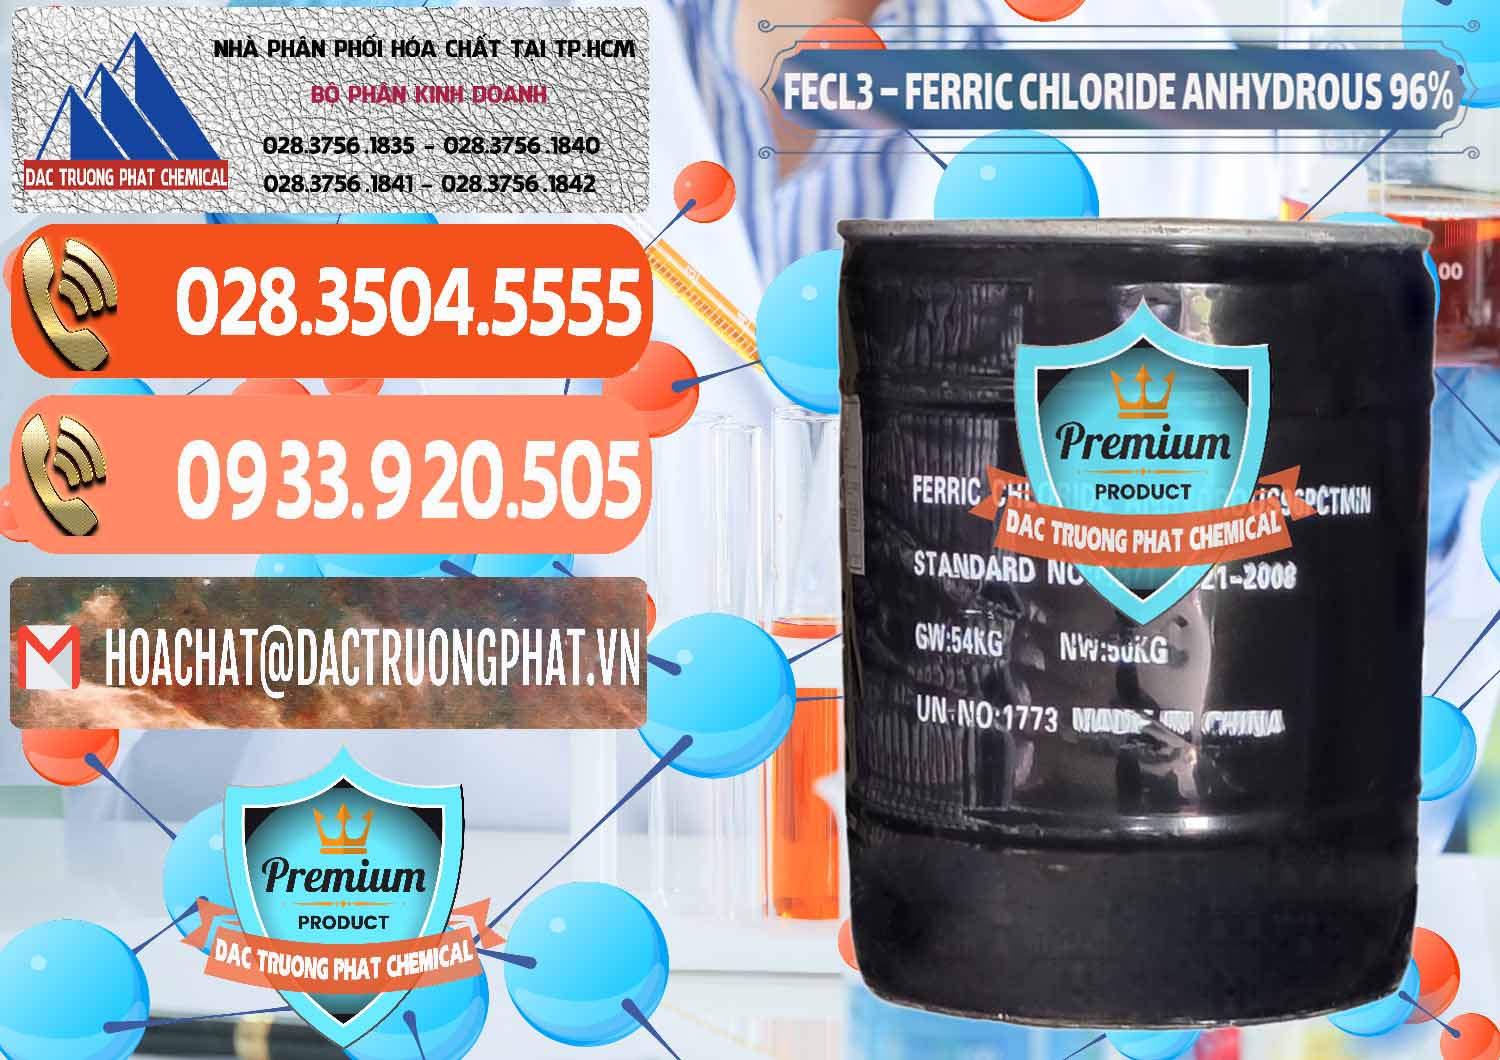 Nơi bán và cung cấp FECL3 – Ferric Chloride Anhydrous 96% Trung Quốc China - 0065 - Chuyên phân phối & cung cấp hóa chất tại TP.HCM - hoachatmientay.com